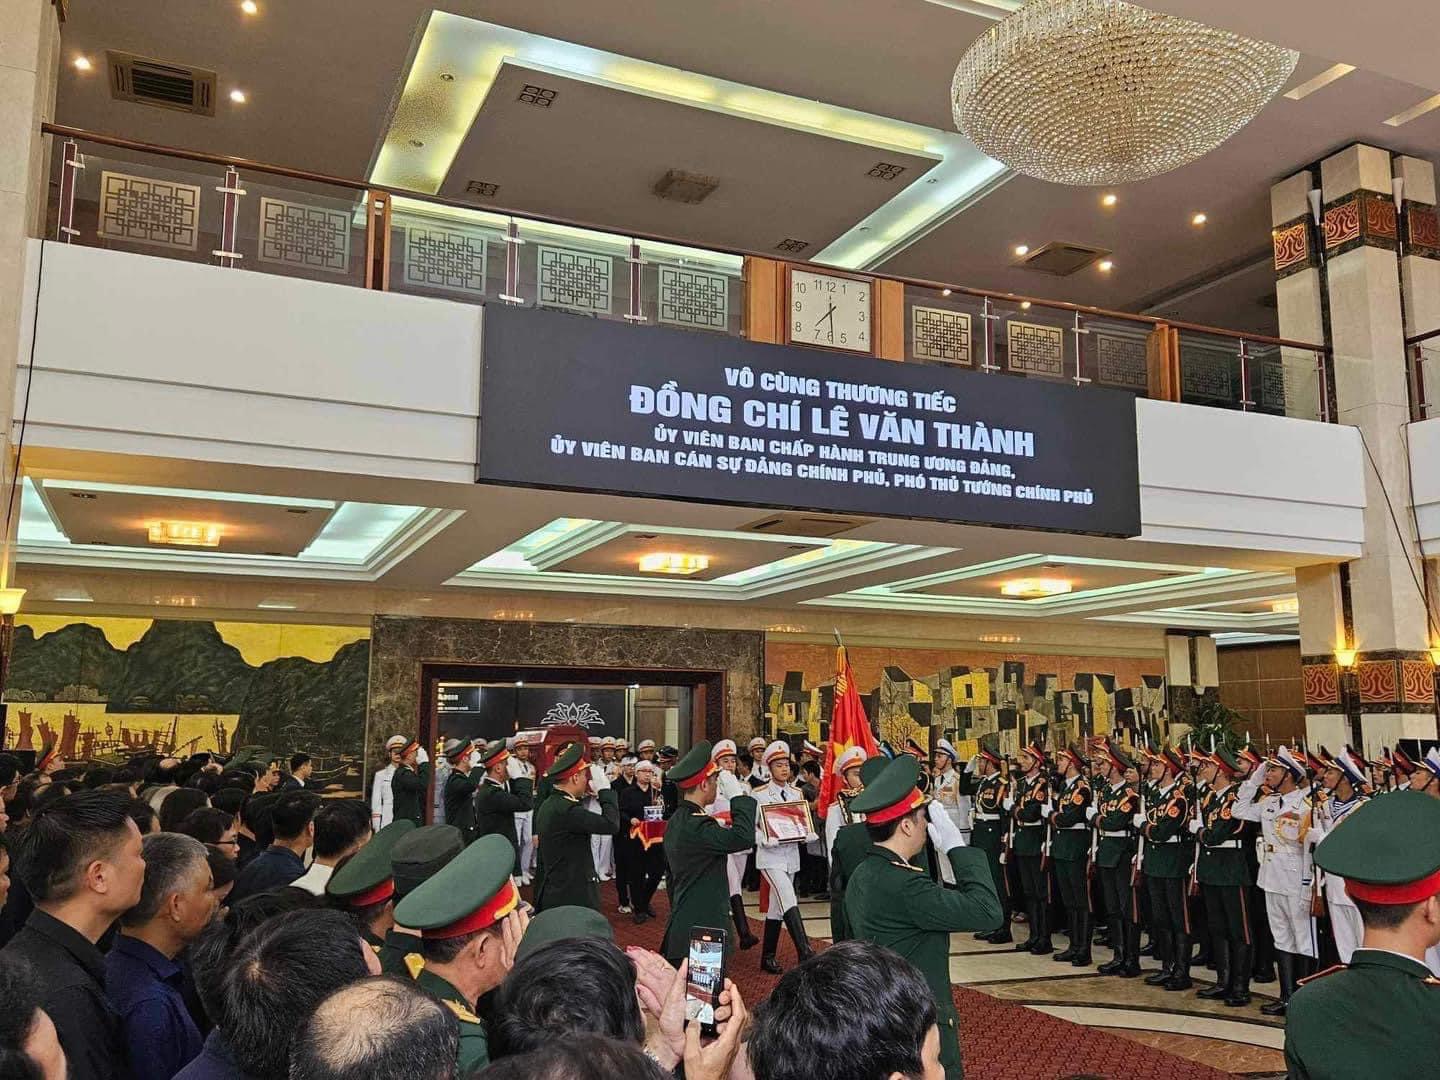 Đồng chí Lê Văn Thành đã có những đóng góp vào qúa trình hoạch định và tổ chức thực hiện đường lối xây dựng và phát triển đất nước.